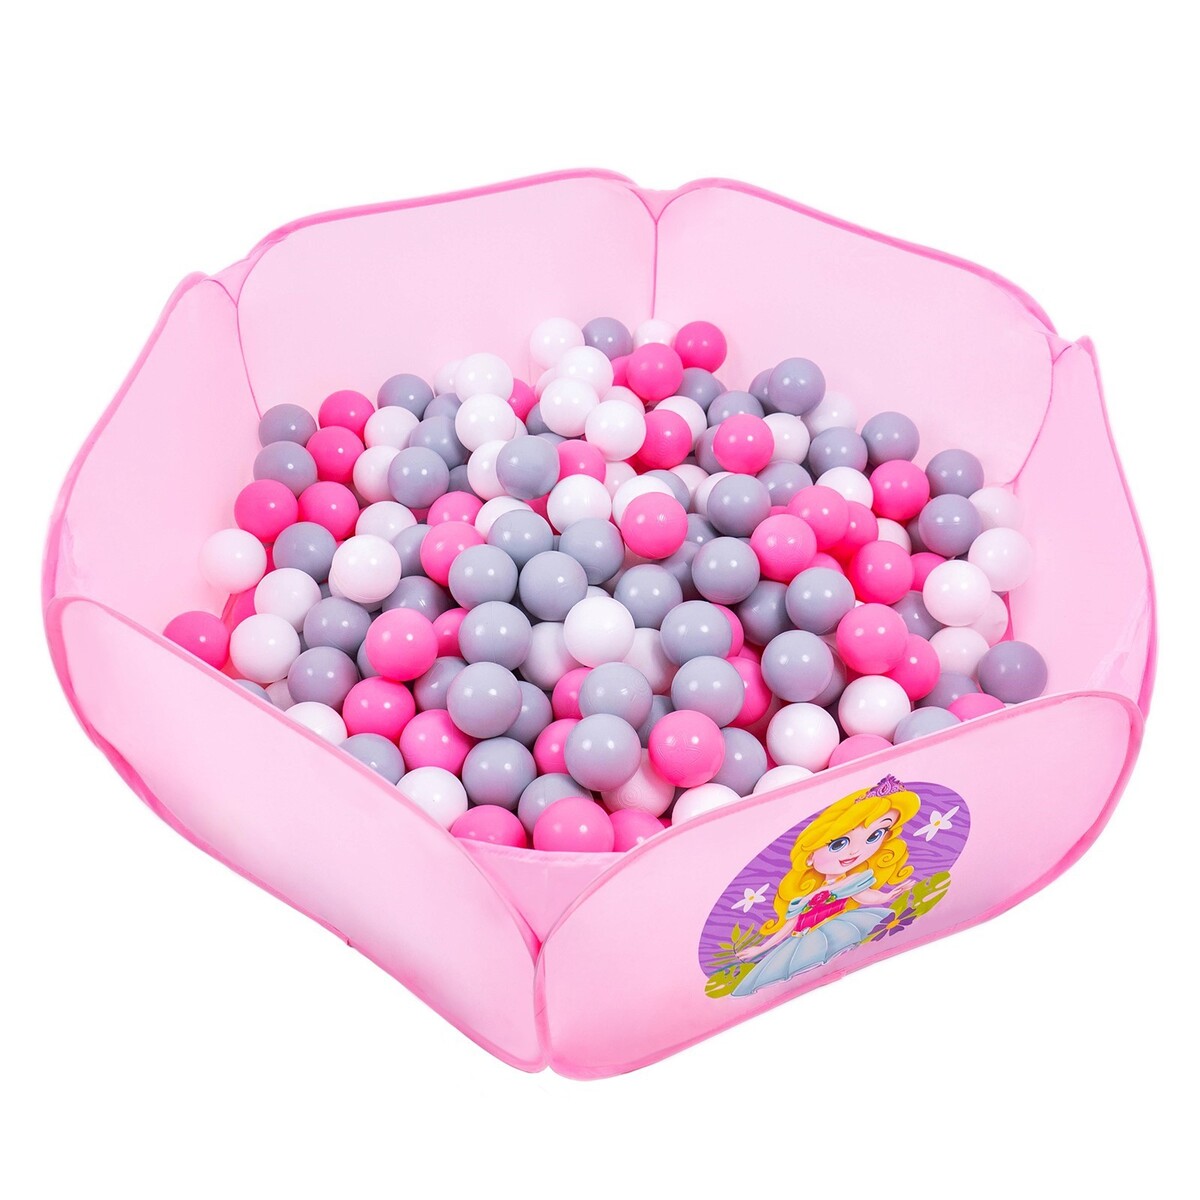 Шарики для сухого бассейна с рисунком, диаметр шара 7,5 см, набор 150 штук, цвет розовый, белый, серый кассон шарики для бассейна 7 см 500 шт 3 452